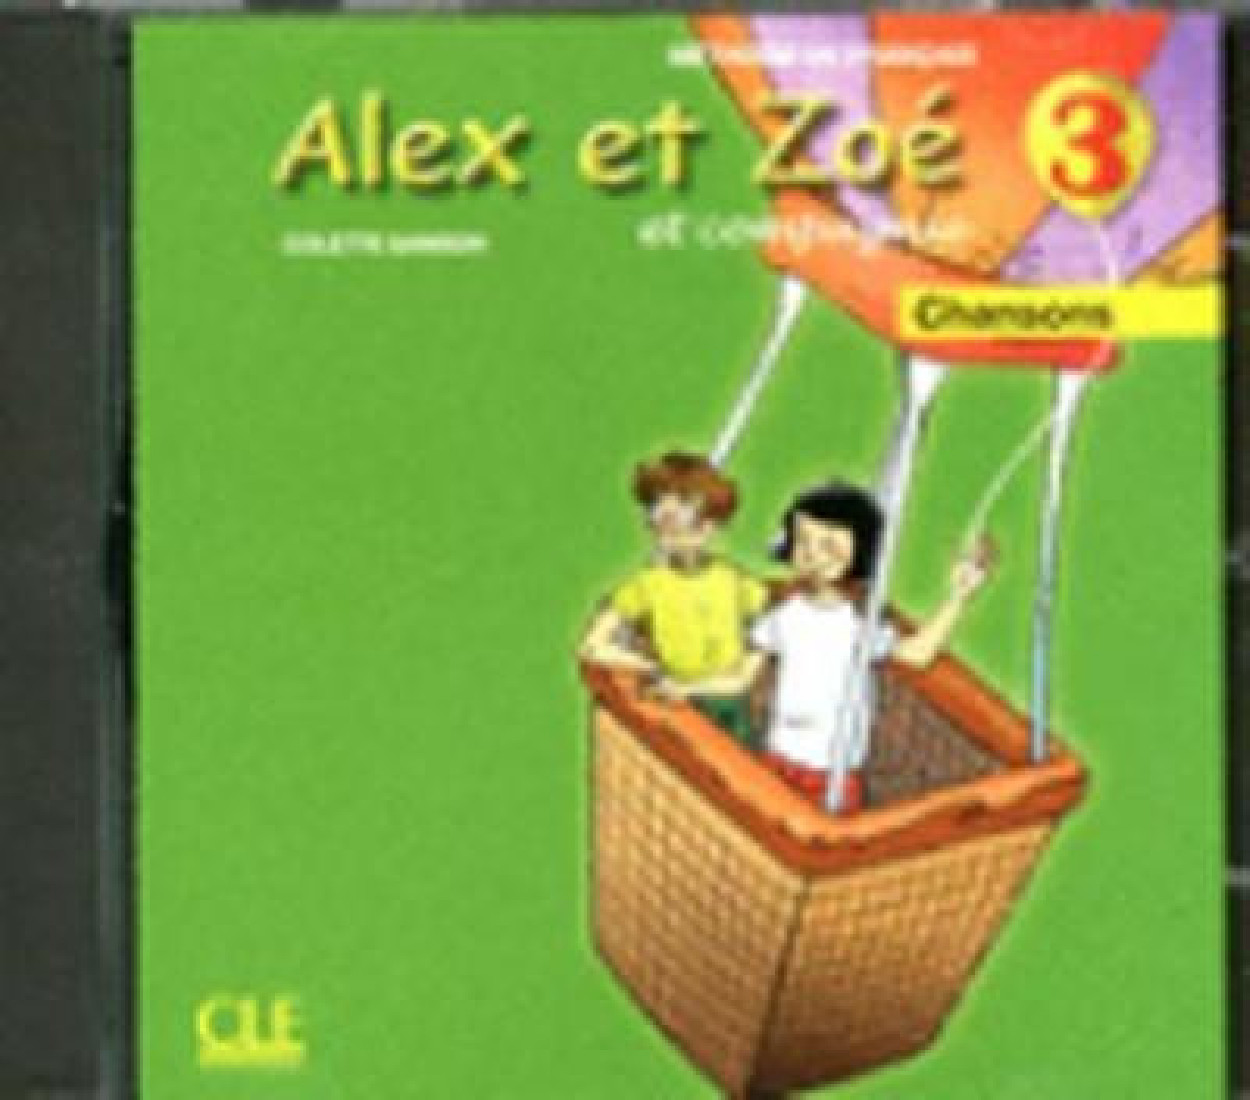 ALEX ET ZOE 3 CD (1) (CHANCONS) N/E